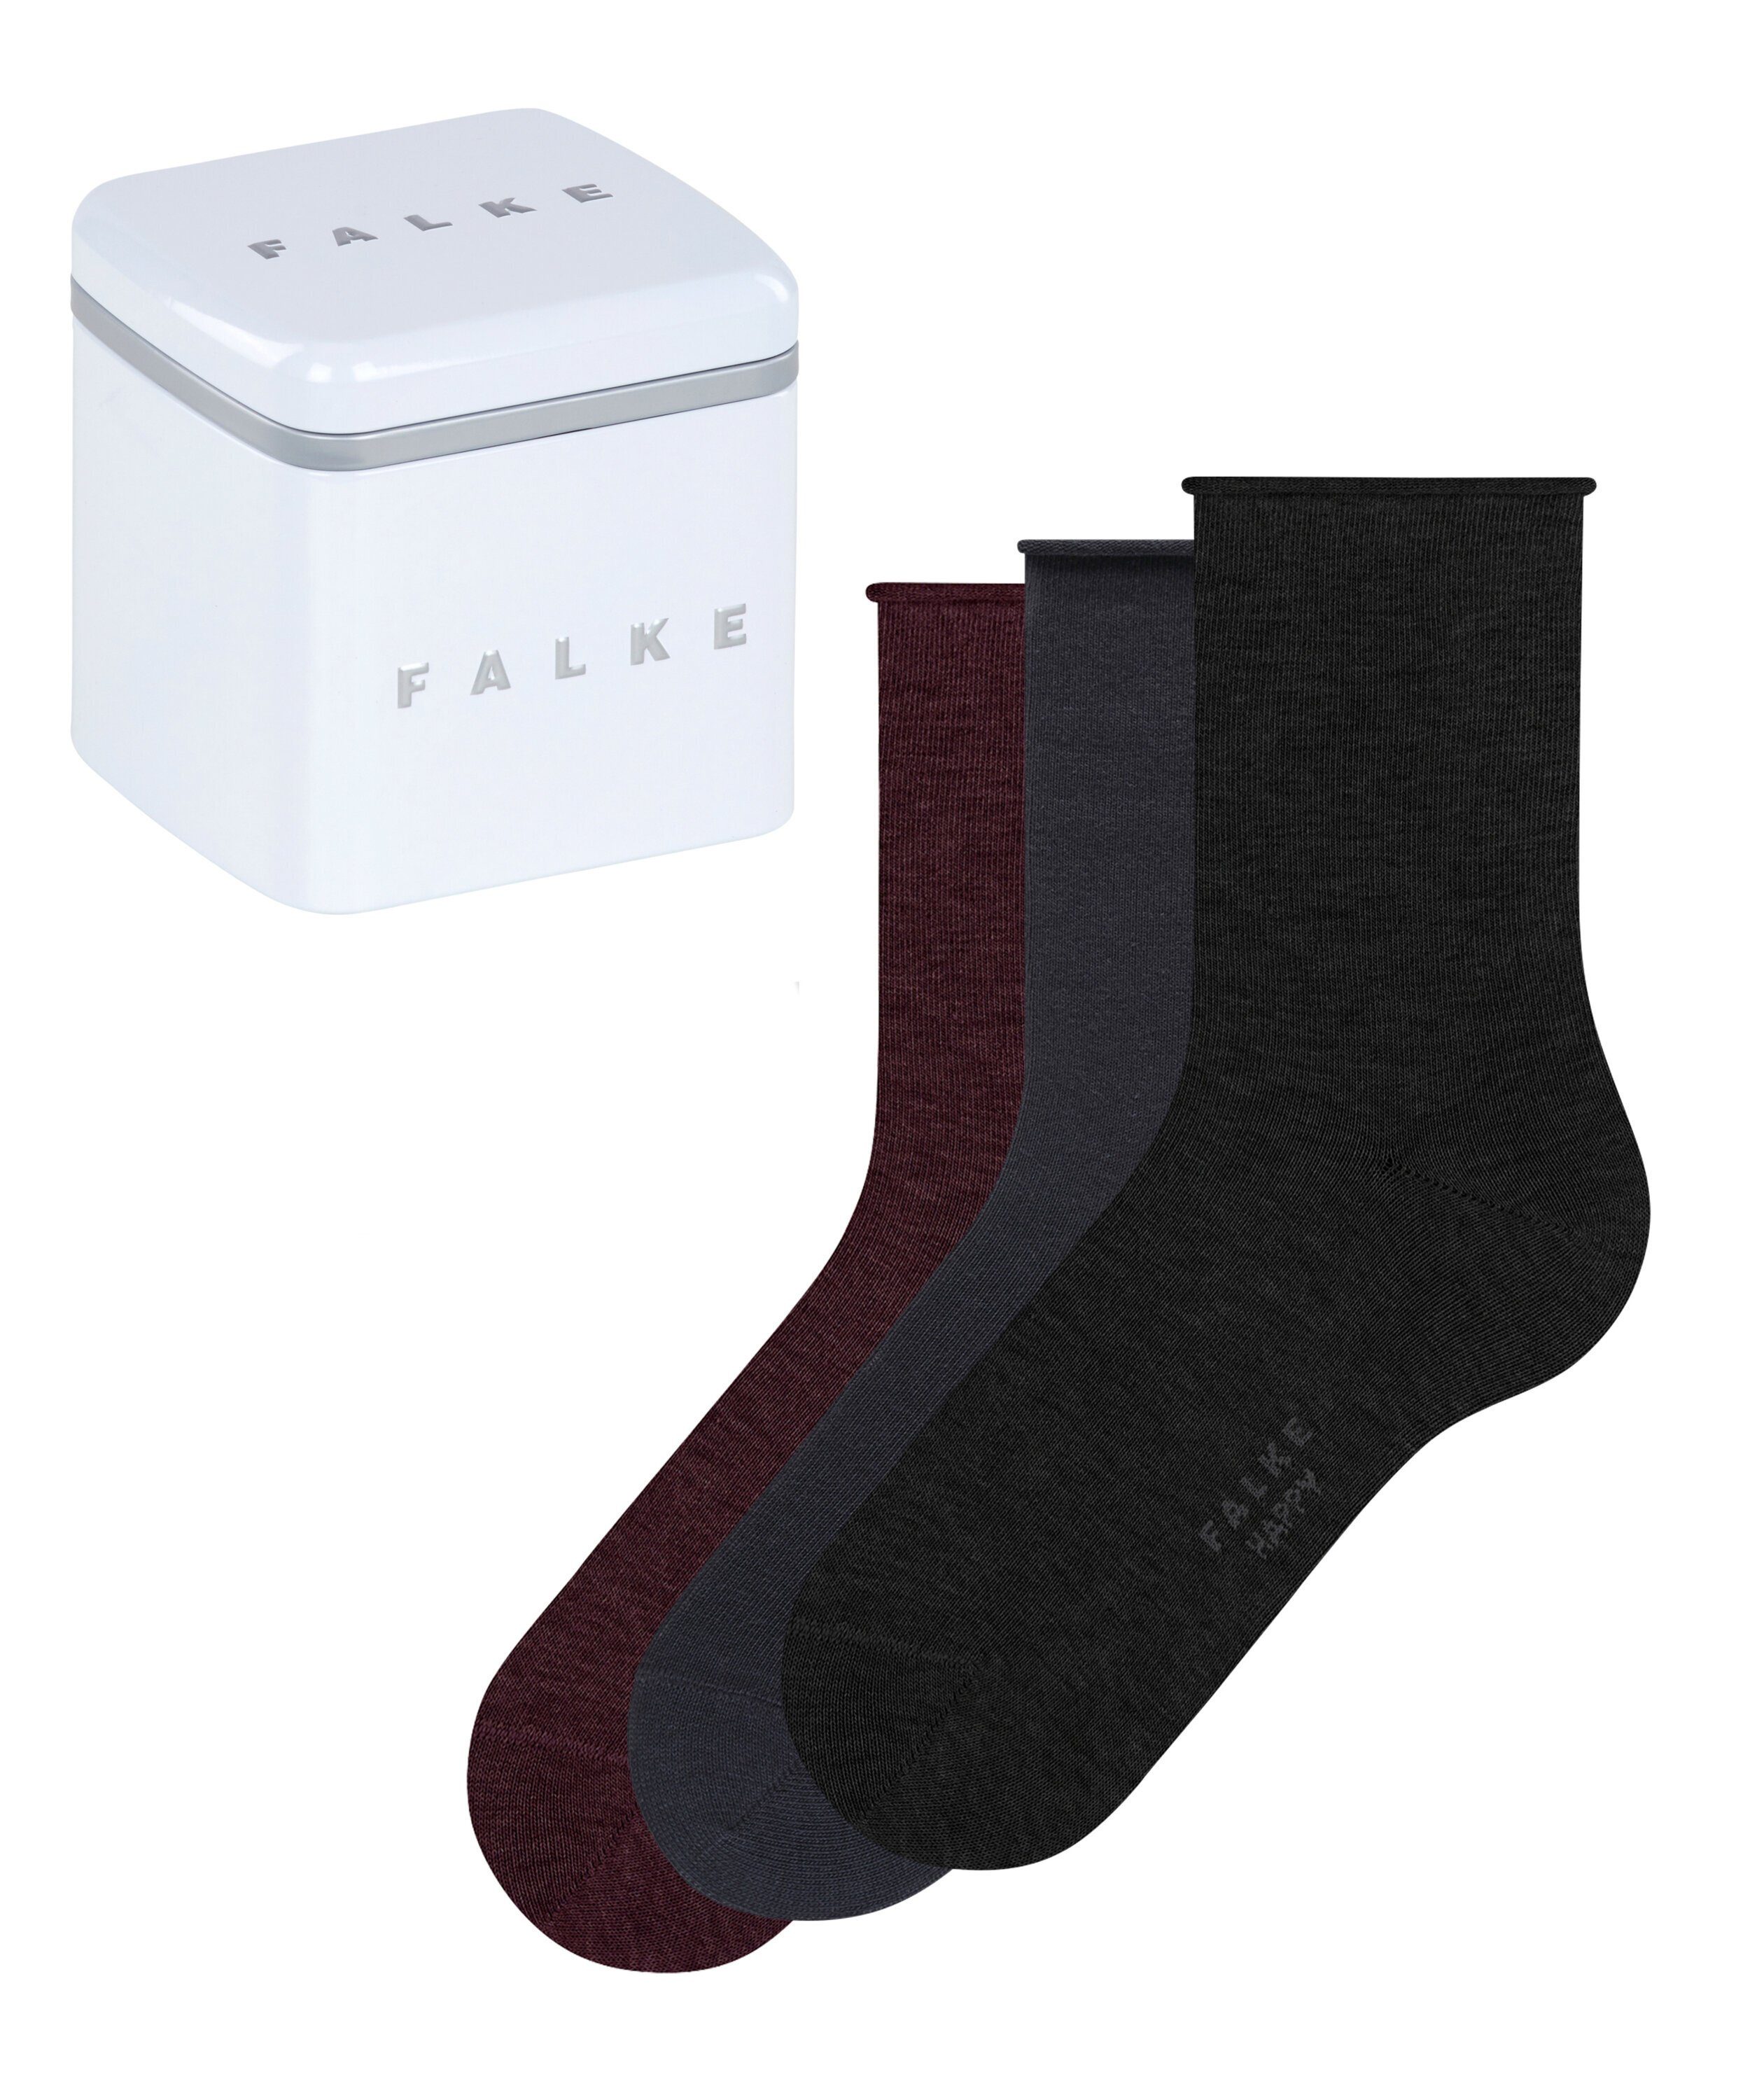 FALKE Socken Happy Box 3-Pack (3-Paar) sortiment (0010)